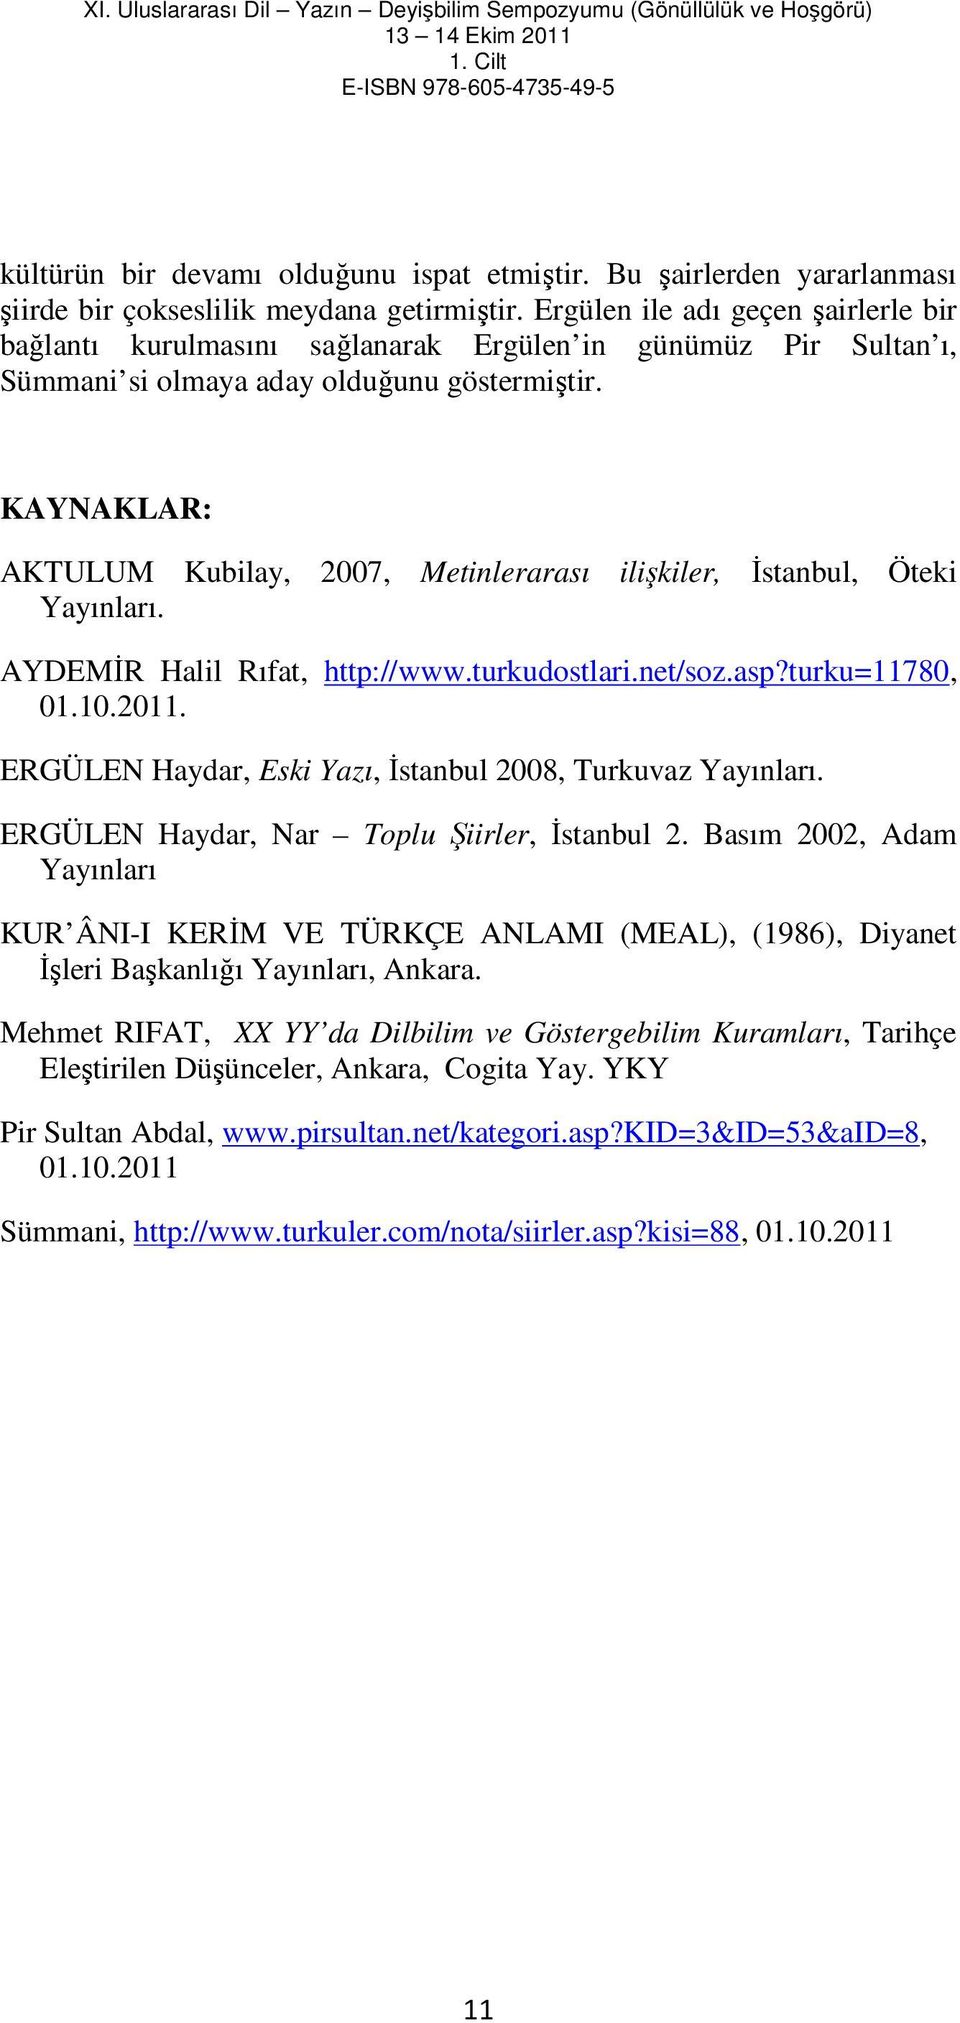 KAYNAKLAR: AKTULUM Kubilay, 2007, Metinlerarası ilişkiler, Đstanbul, Öteki Yayınları. AYDEMĐR Halil Rıfat, http://www.turkudostlari.net/soz.asp?turku=11780, 01.10.2011.